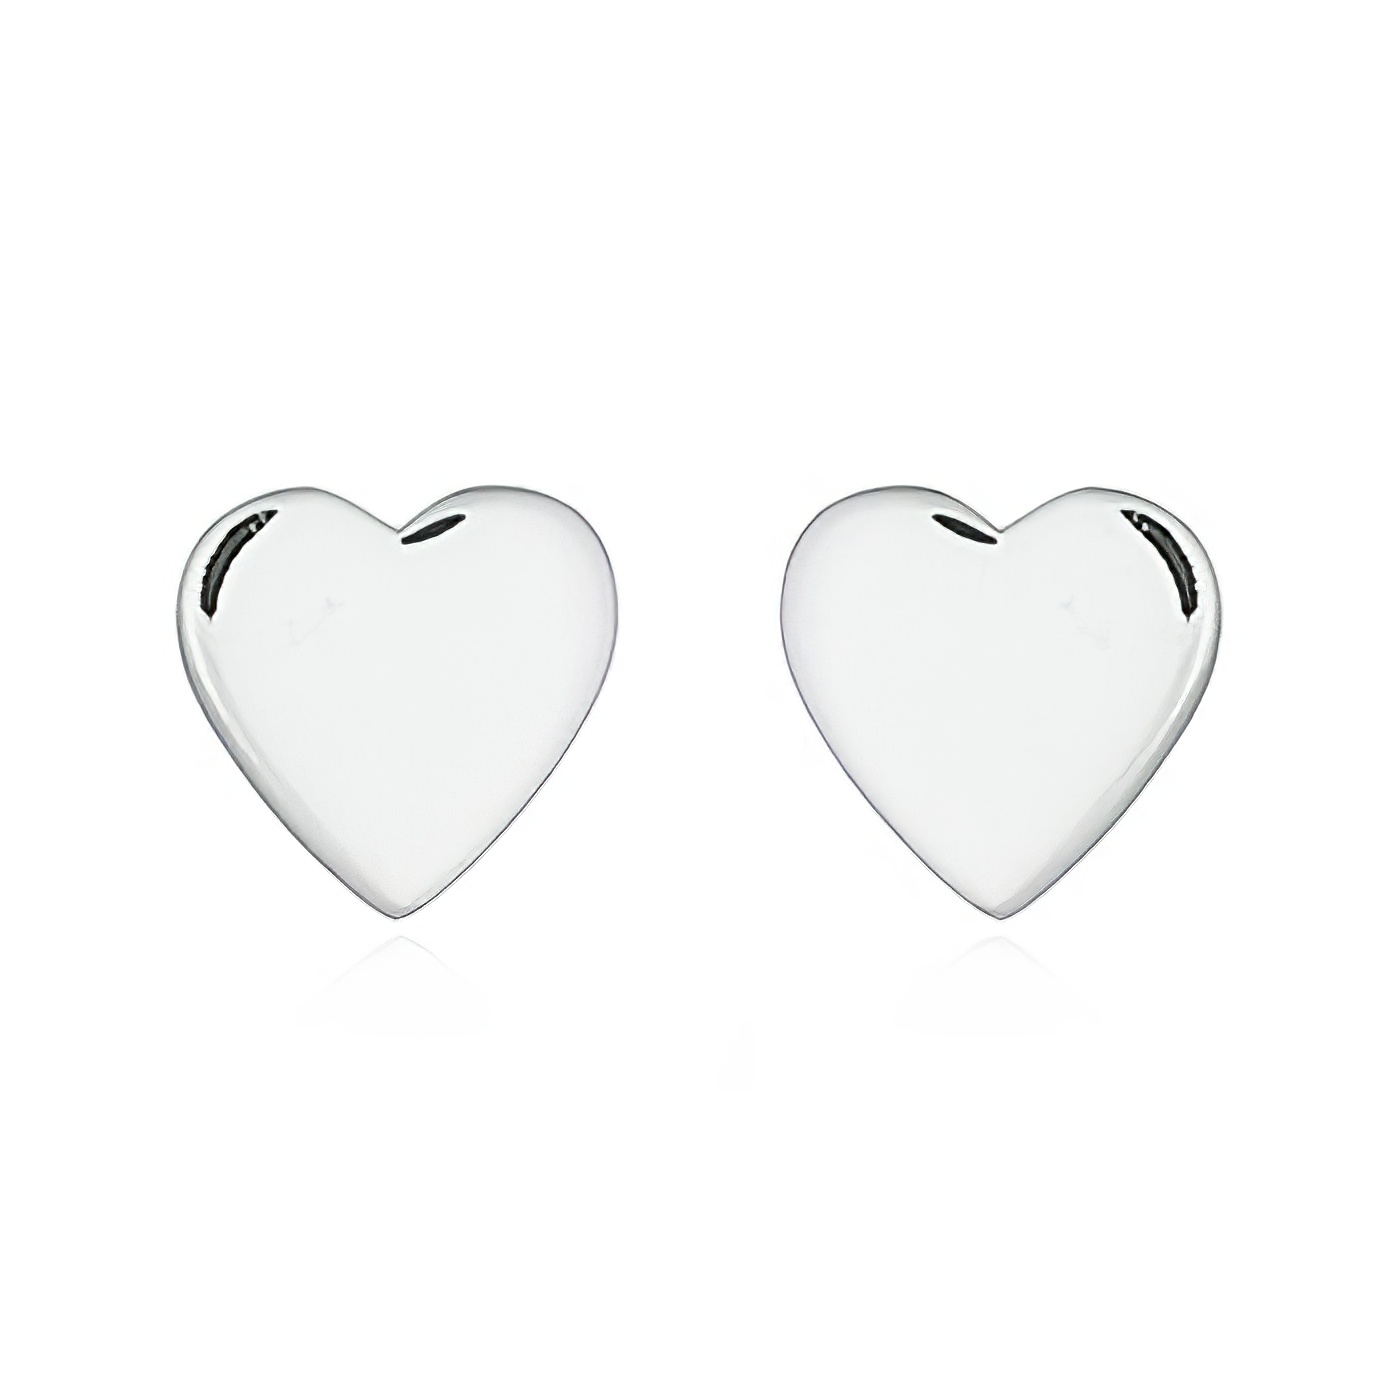 Little Plain Heart Silver 925 Stud Earrings by BeYindi 